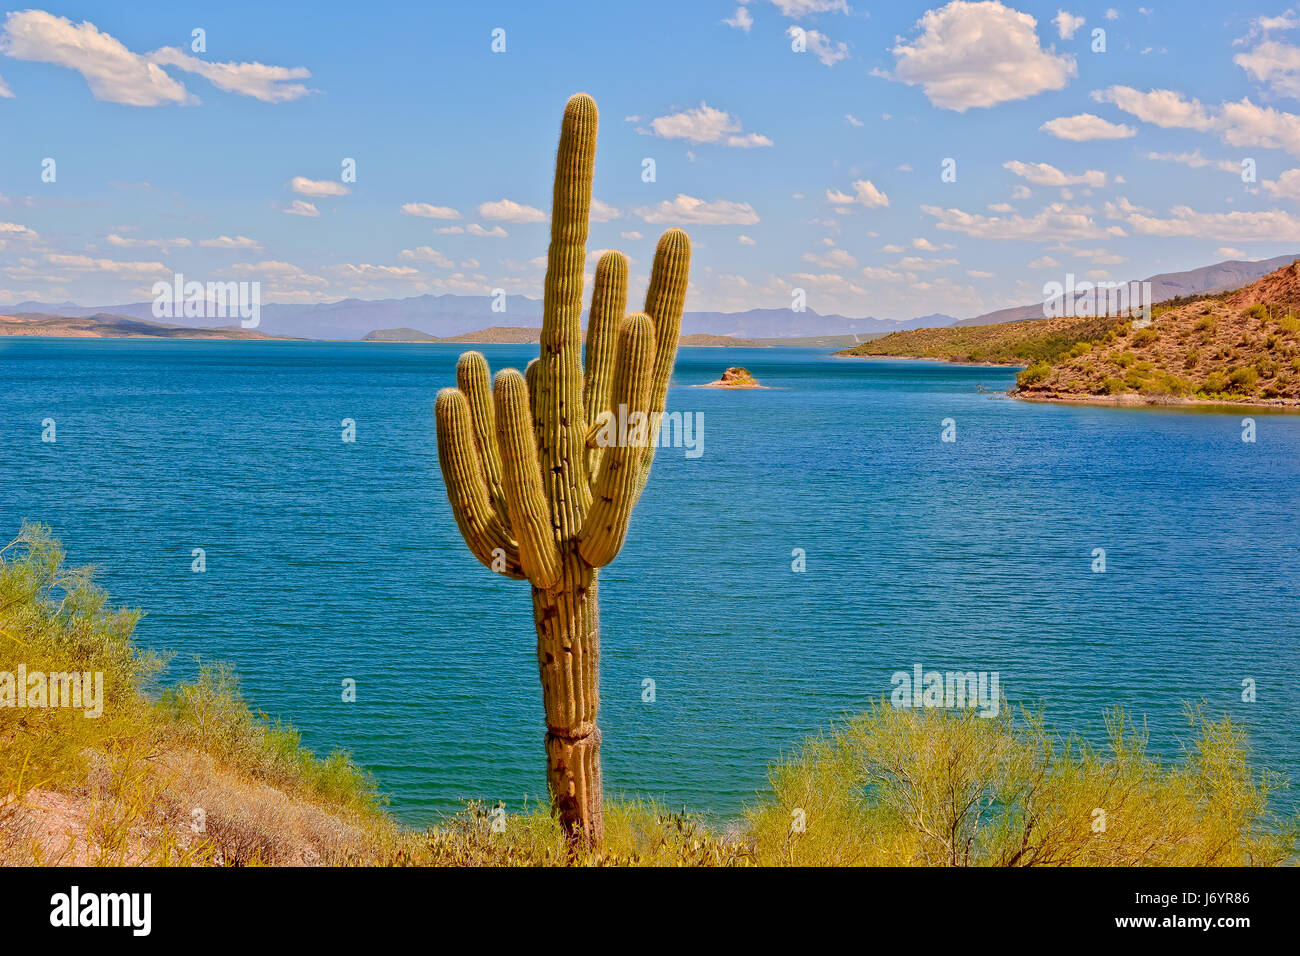 Saguaro cactus by Theodore Roosevelt Lake, Arizona, United States Stock Photo